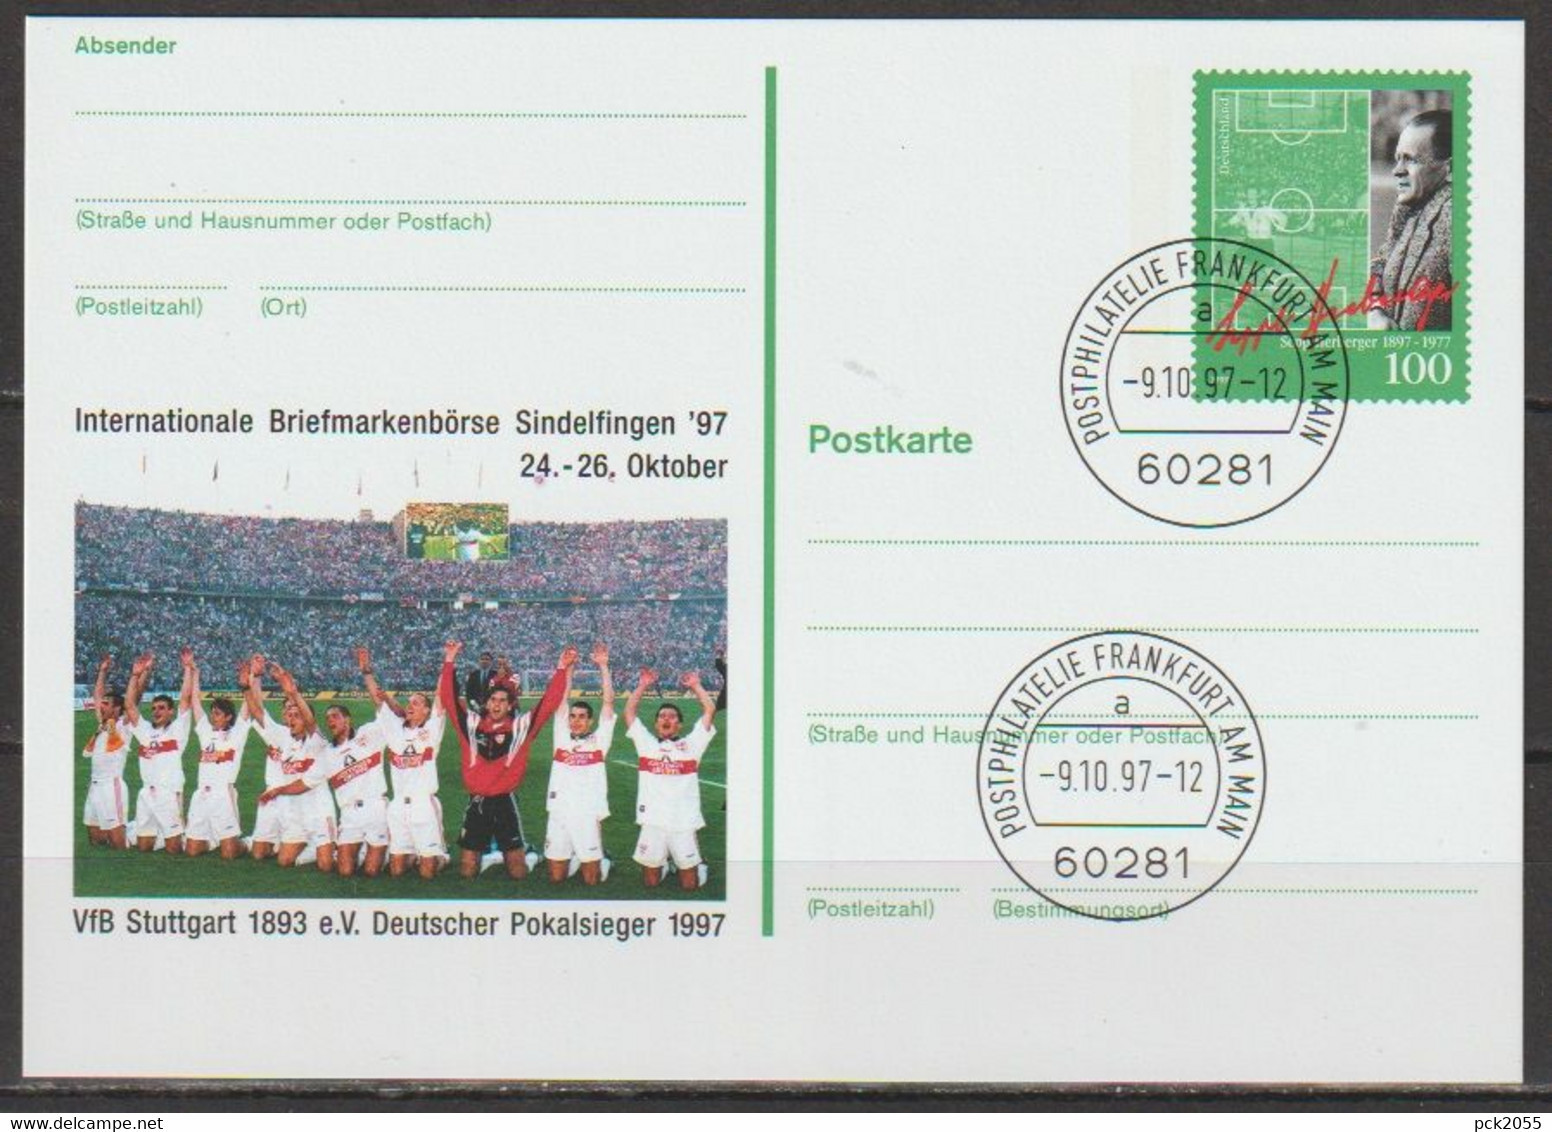 BRD Ganzsache 1997 PSo50 Briefmarkenbörse Sindelfingen EST. 9.10.97 Postphilatelie Frankfurt(d186)günstige Versandkosten - Postcards - Used